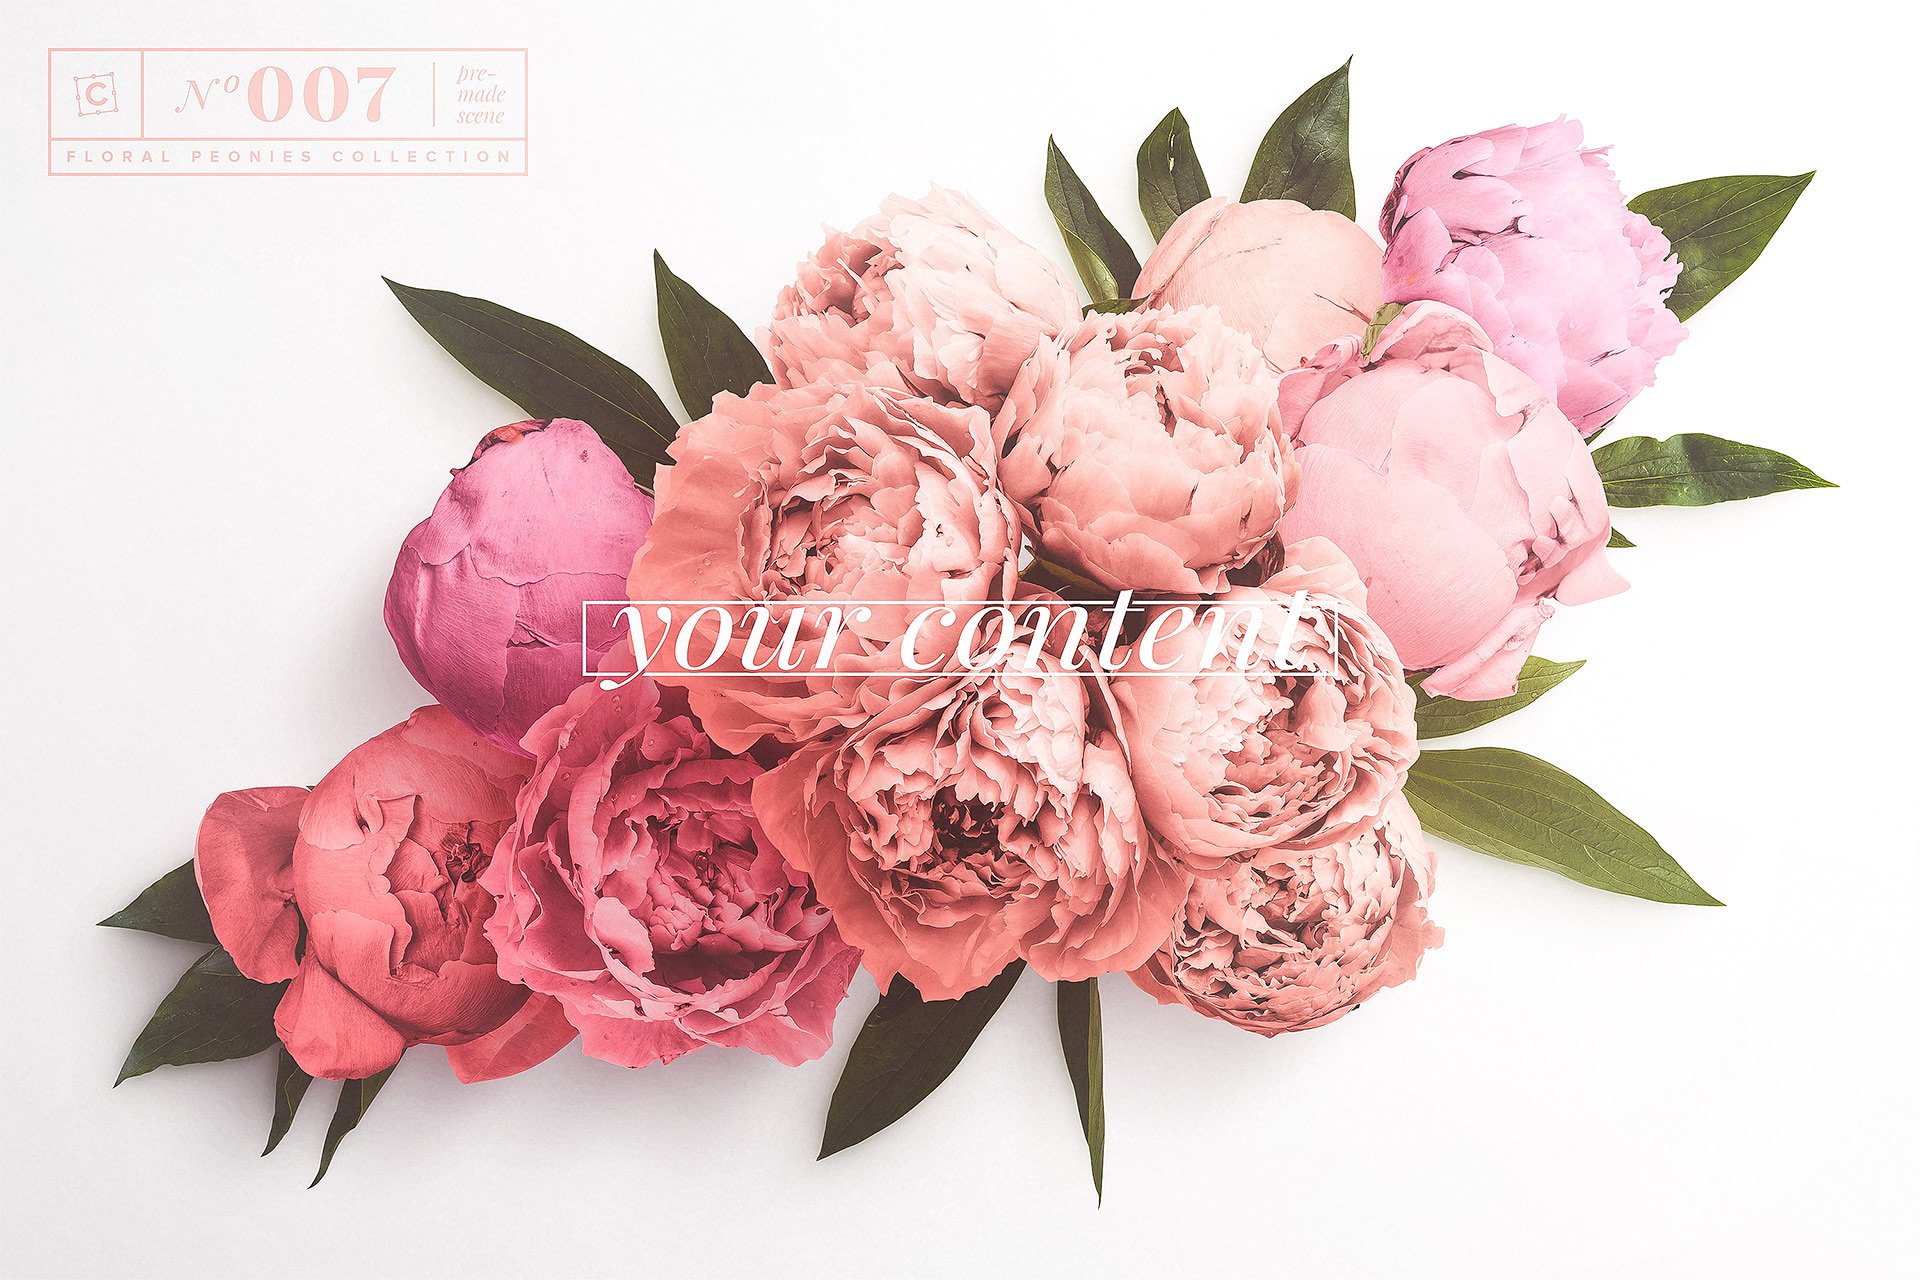 牡丹花卉系列高清图片集合 Floral Peonies Collection插图3